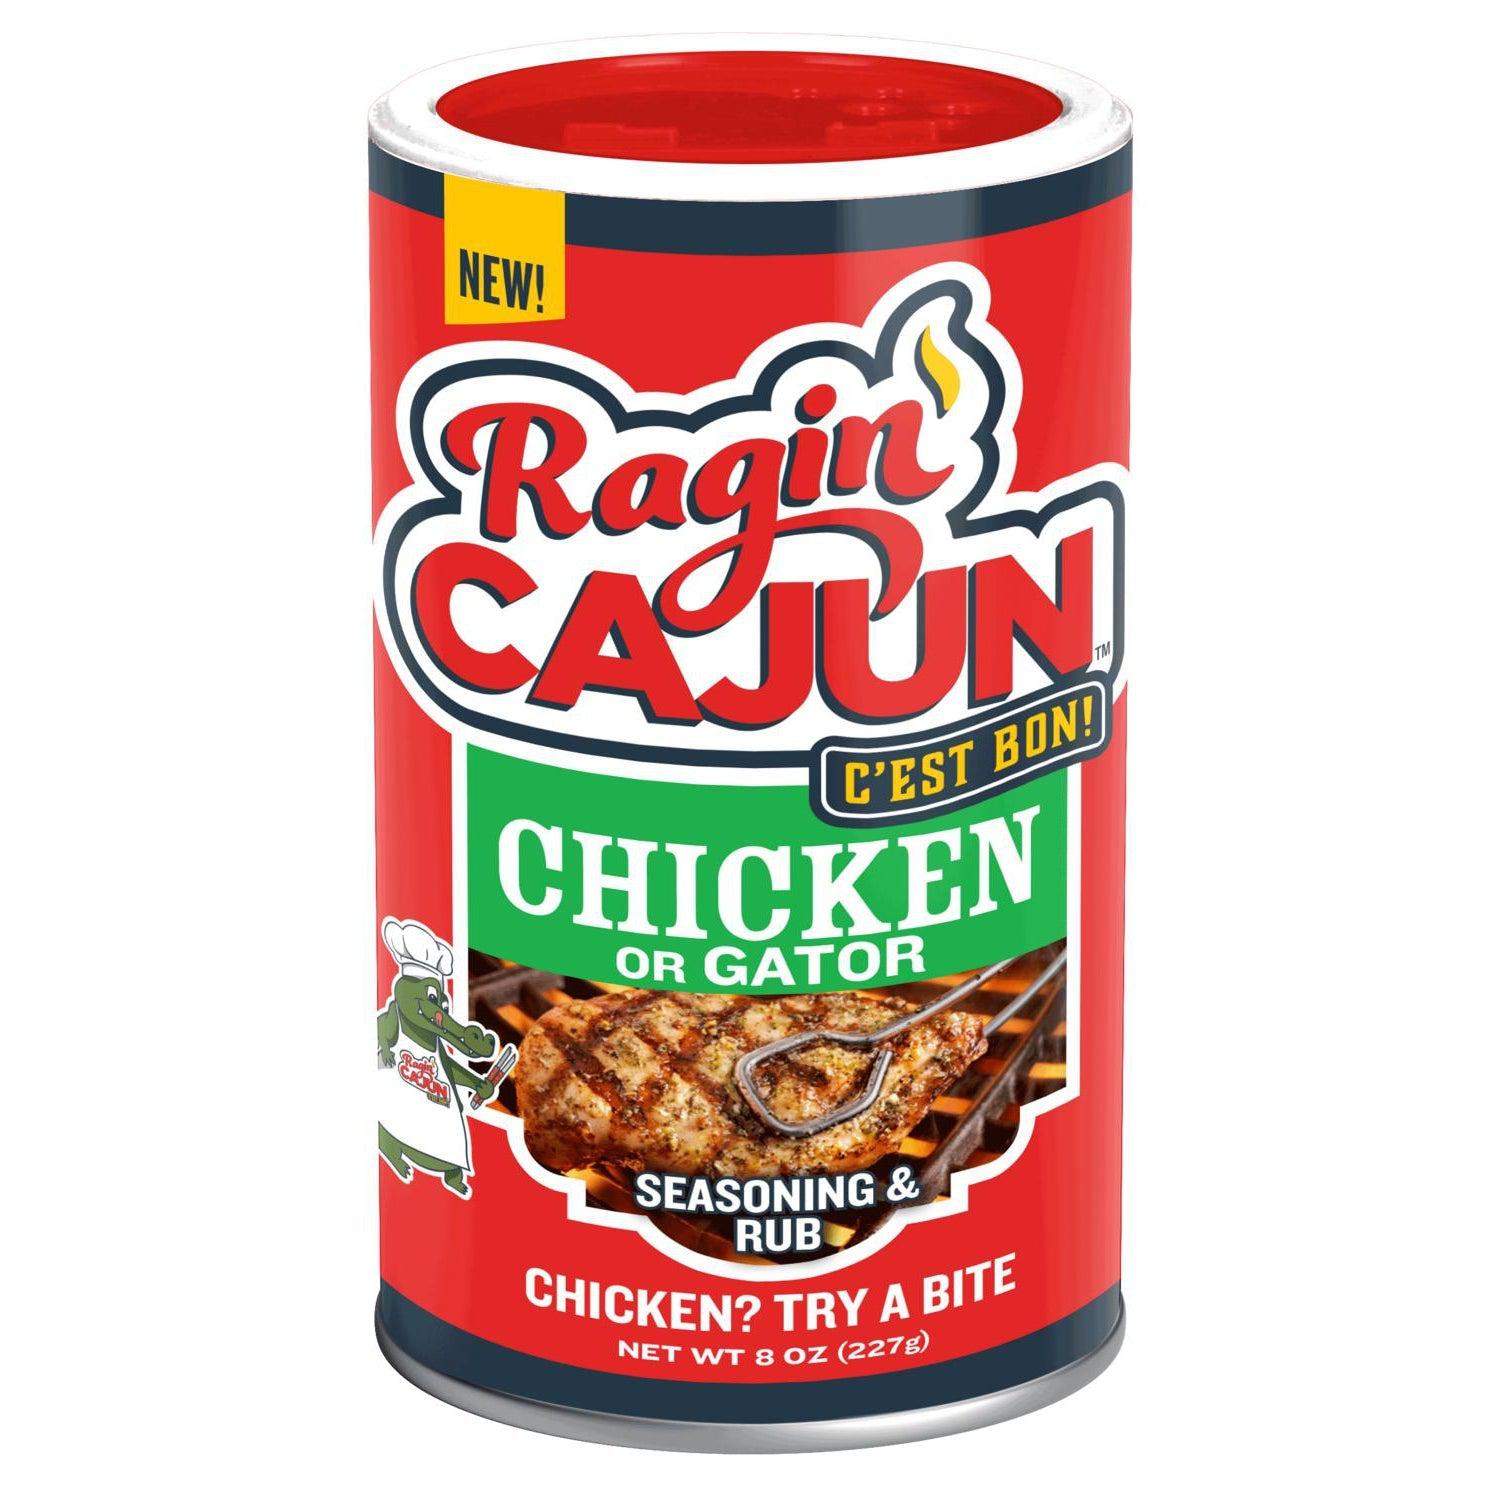 Ragin' Cajun Chicken & Gator Seasoning & Rub 8 oz